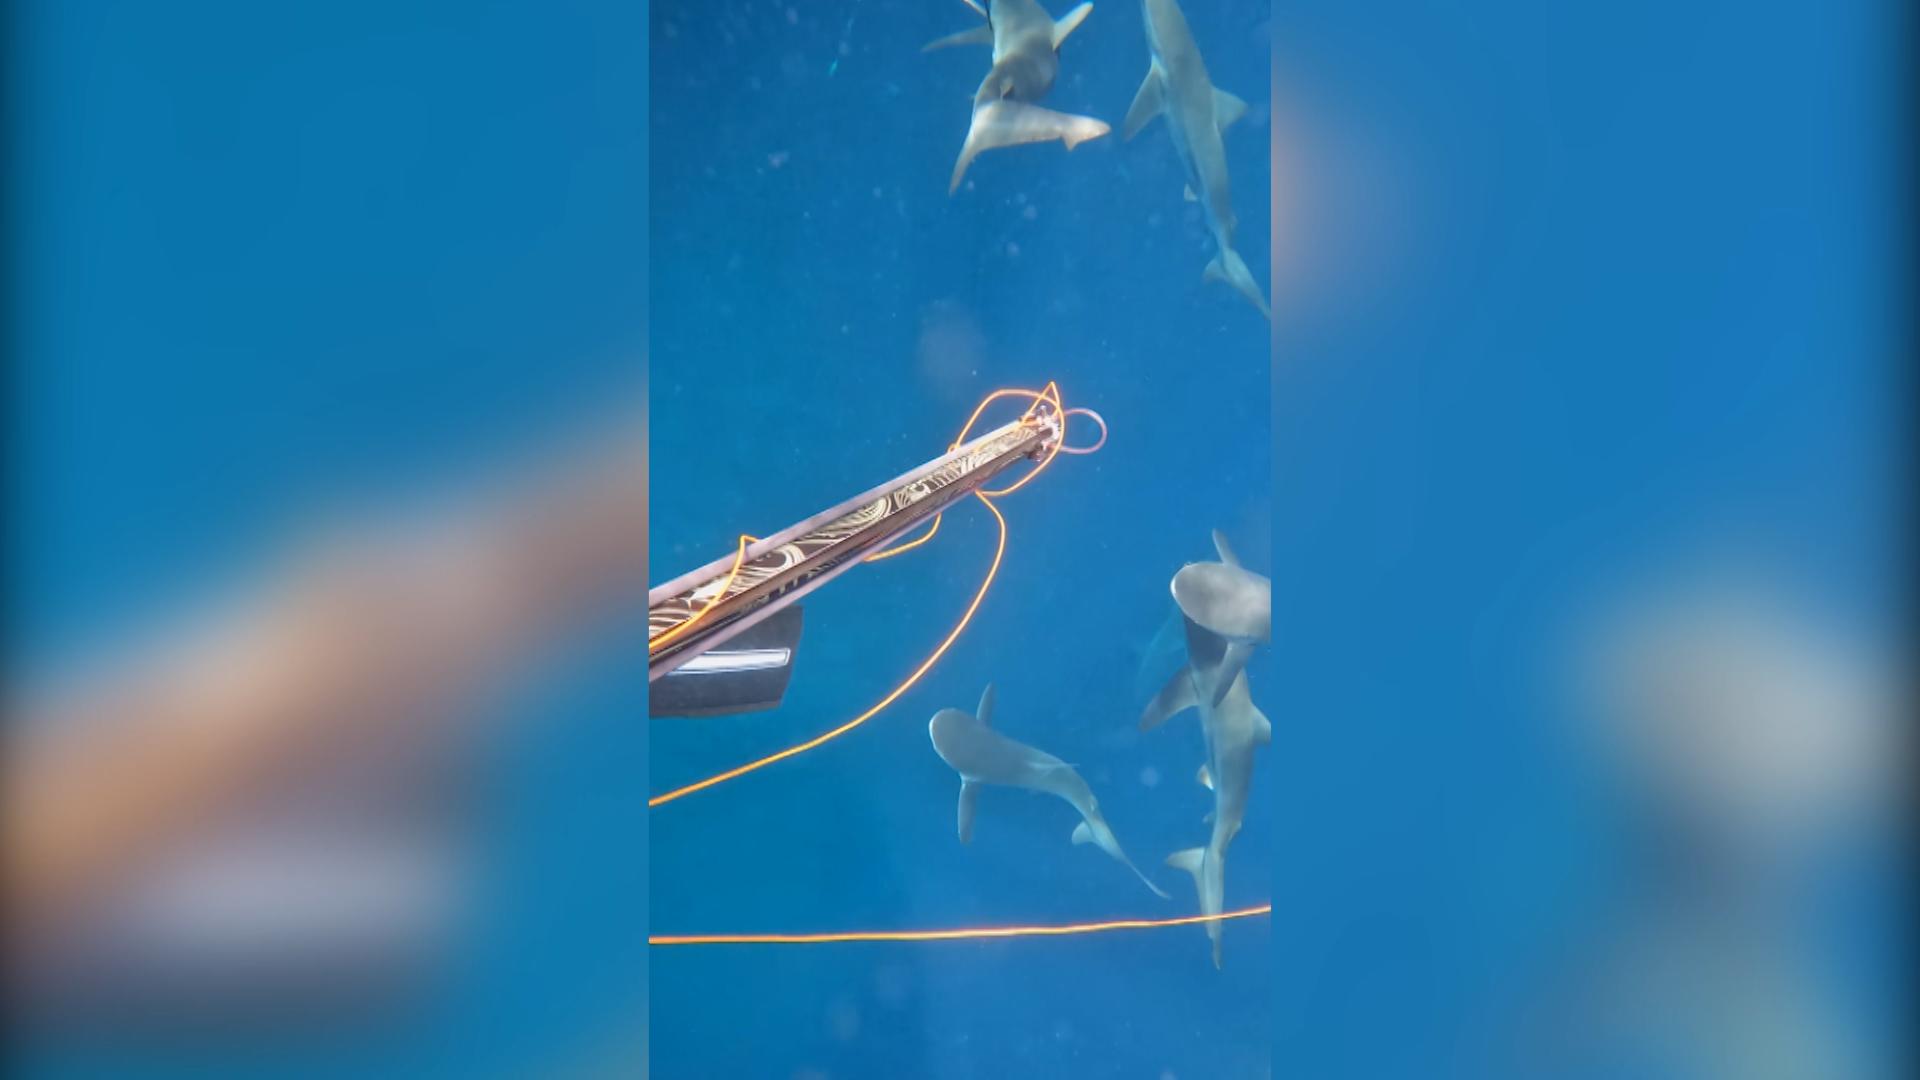 Plötzlich aus der Tiefe: Haie greifen Taucher an! Beim Speerfischen